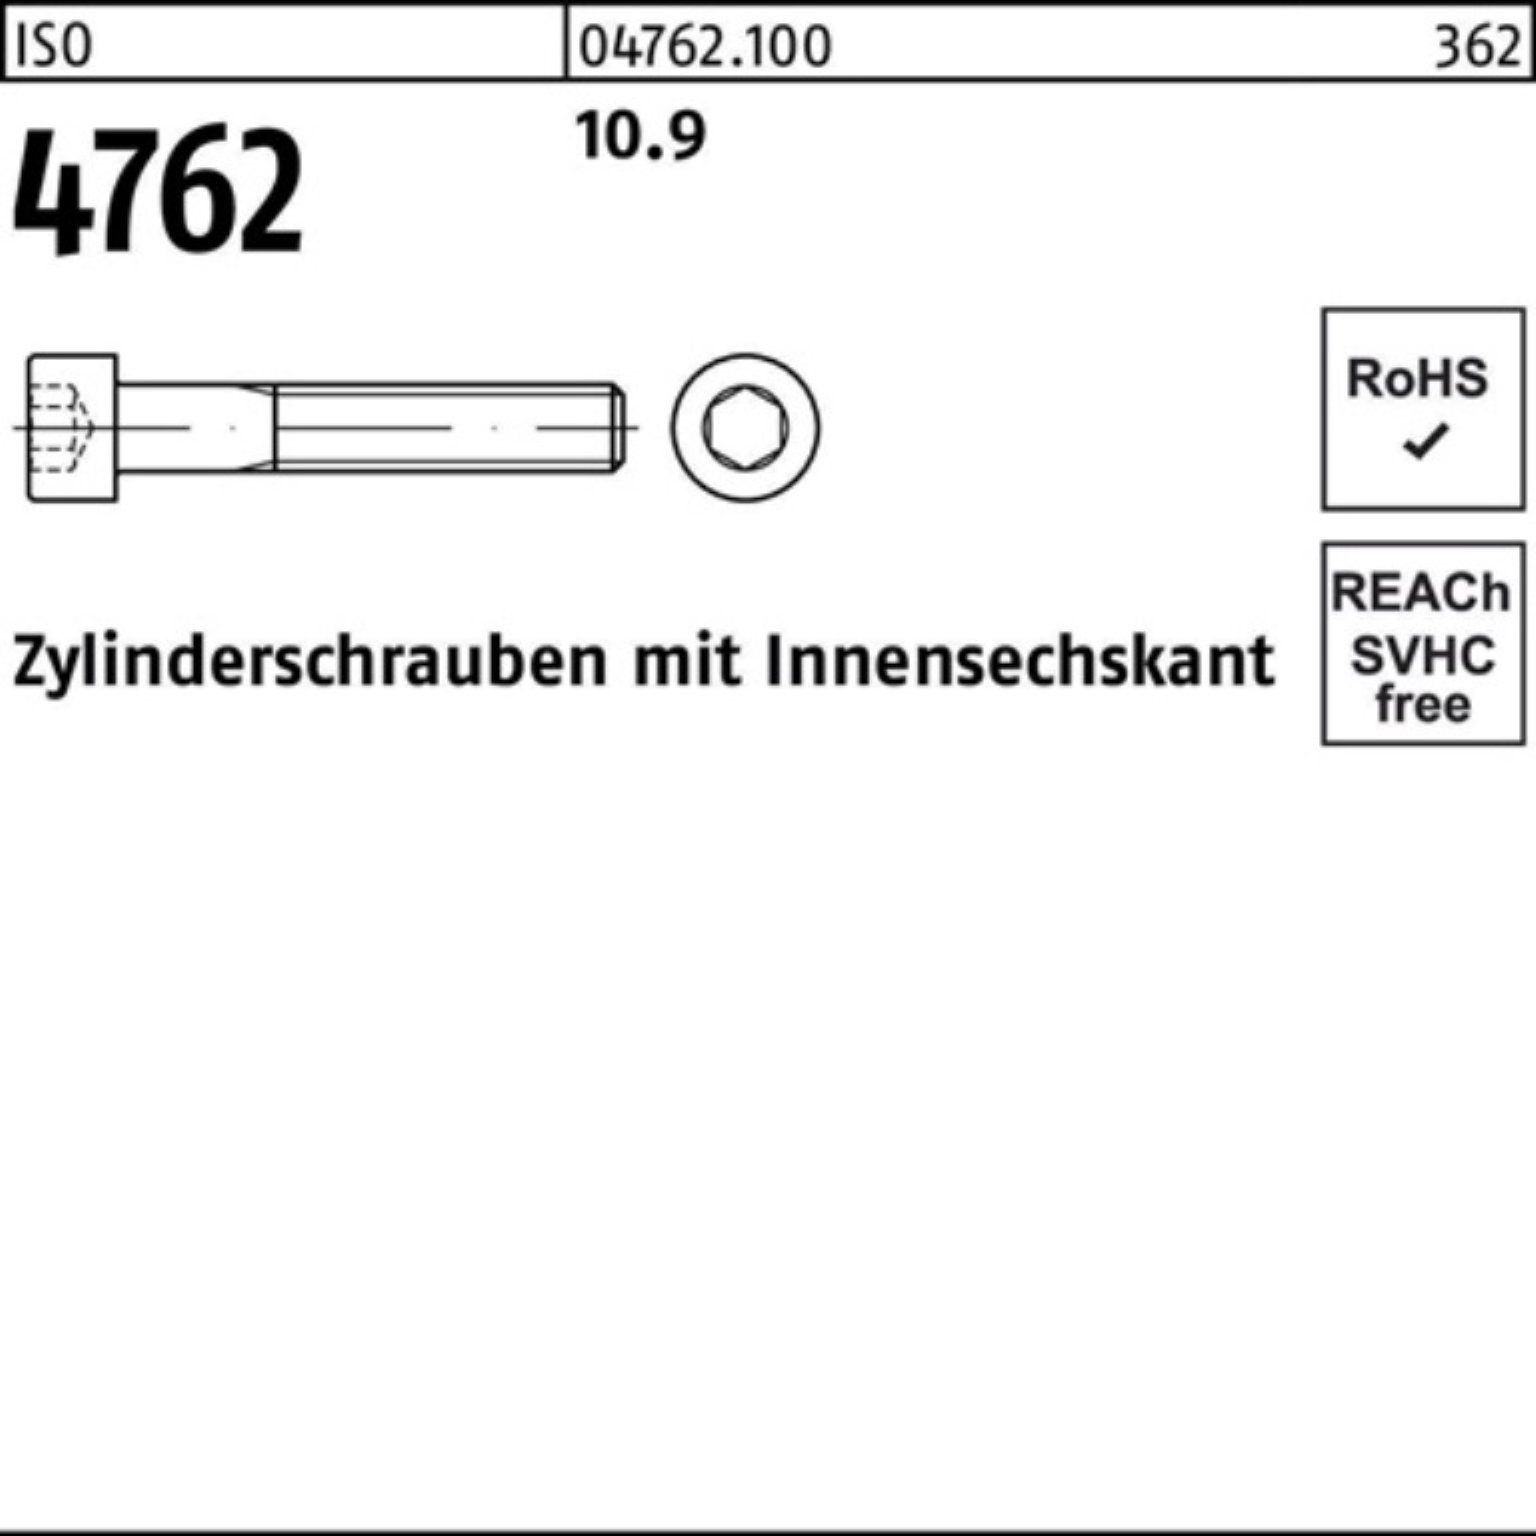 Einkaufszentrum Reyher Zylinderschraube Innen-6kt Zylinderschraube Pack Stück 10.9 4762 100er 25 50 ISO M20x